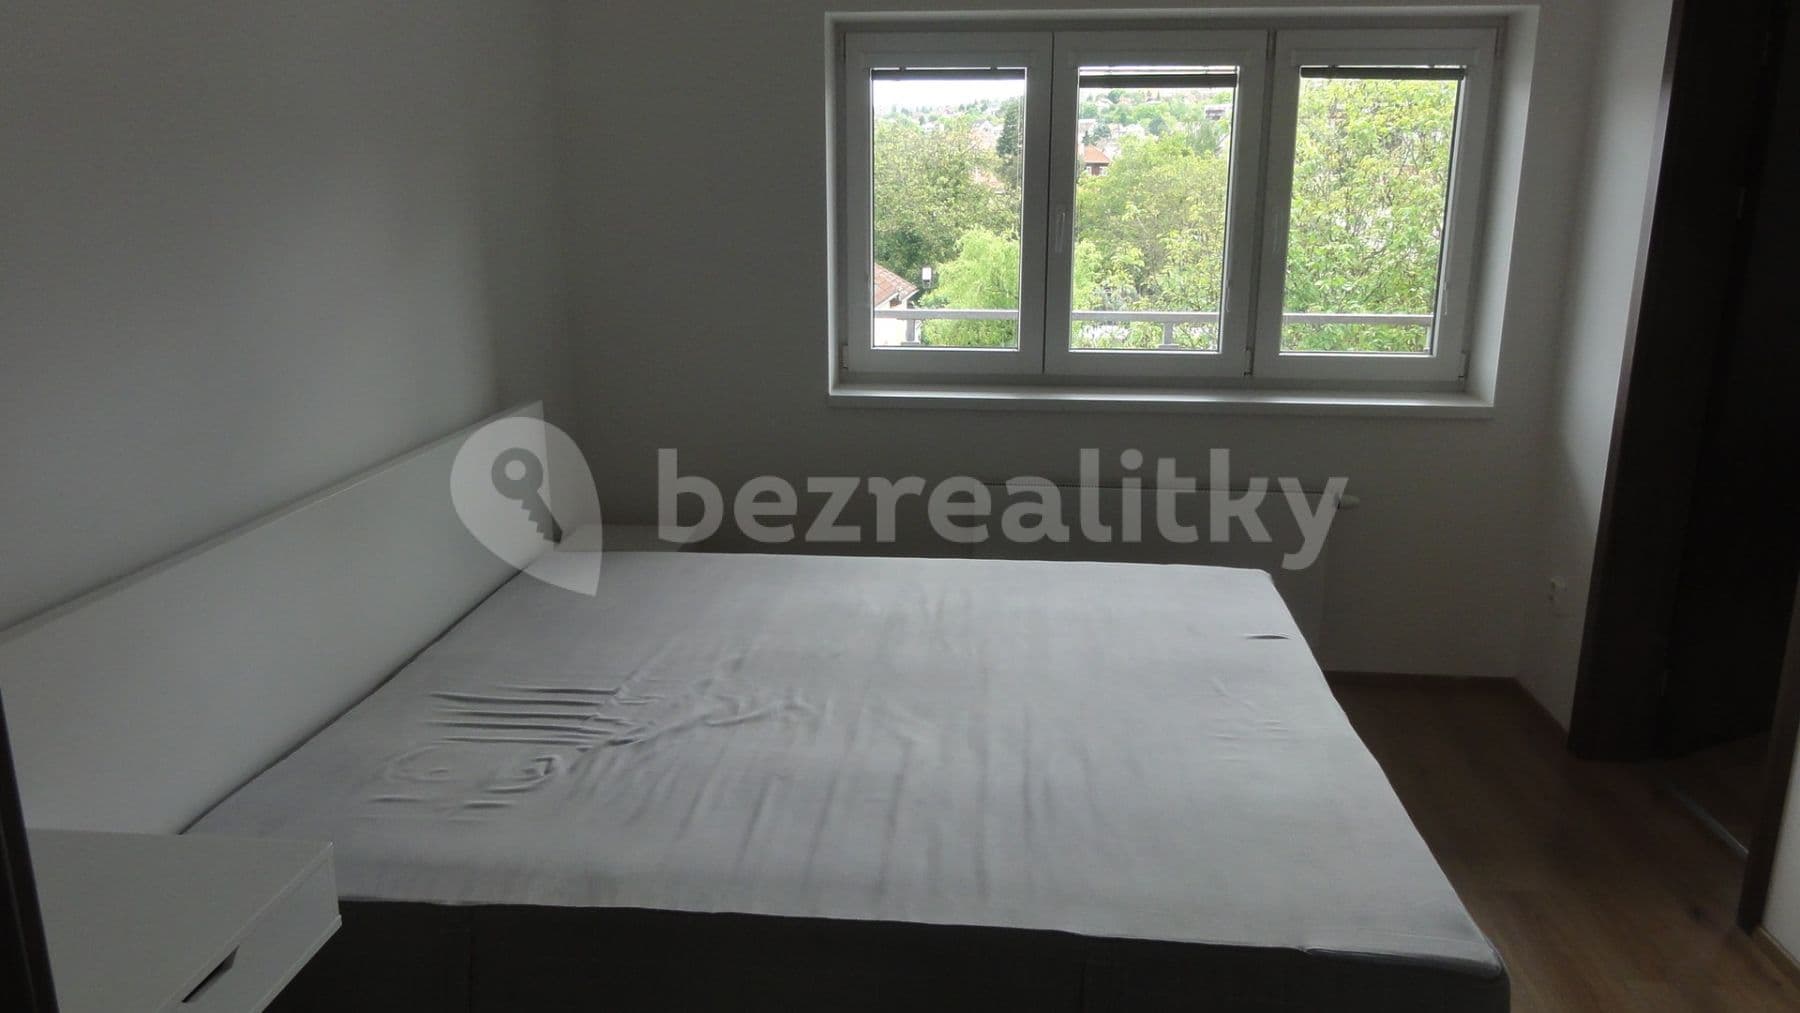 1 bedroom with open-plan kitchen flat to rent, 62 m², K Vystrkovu, Prague, Prague